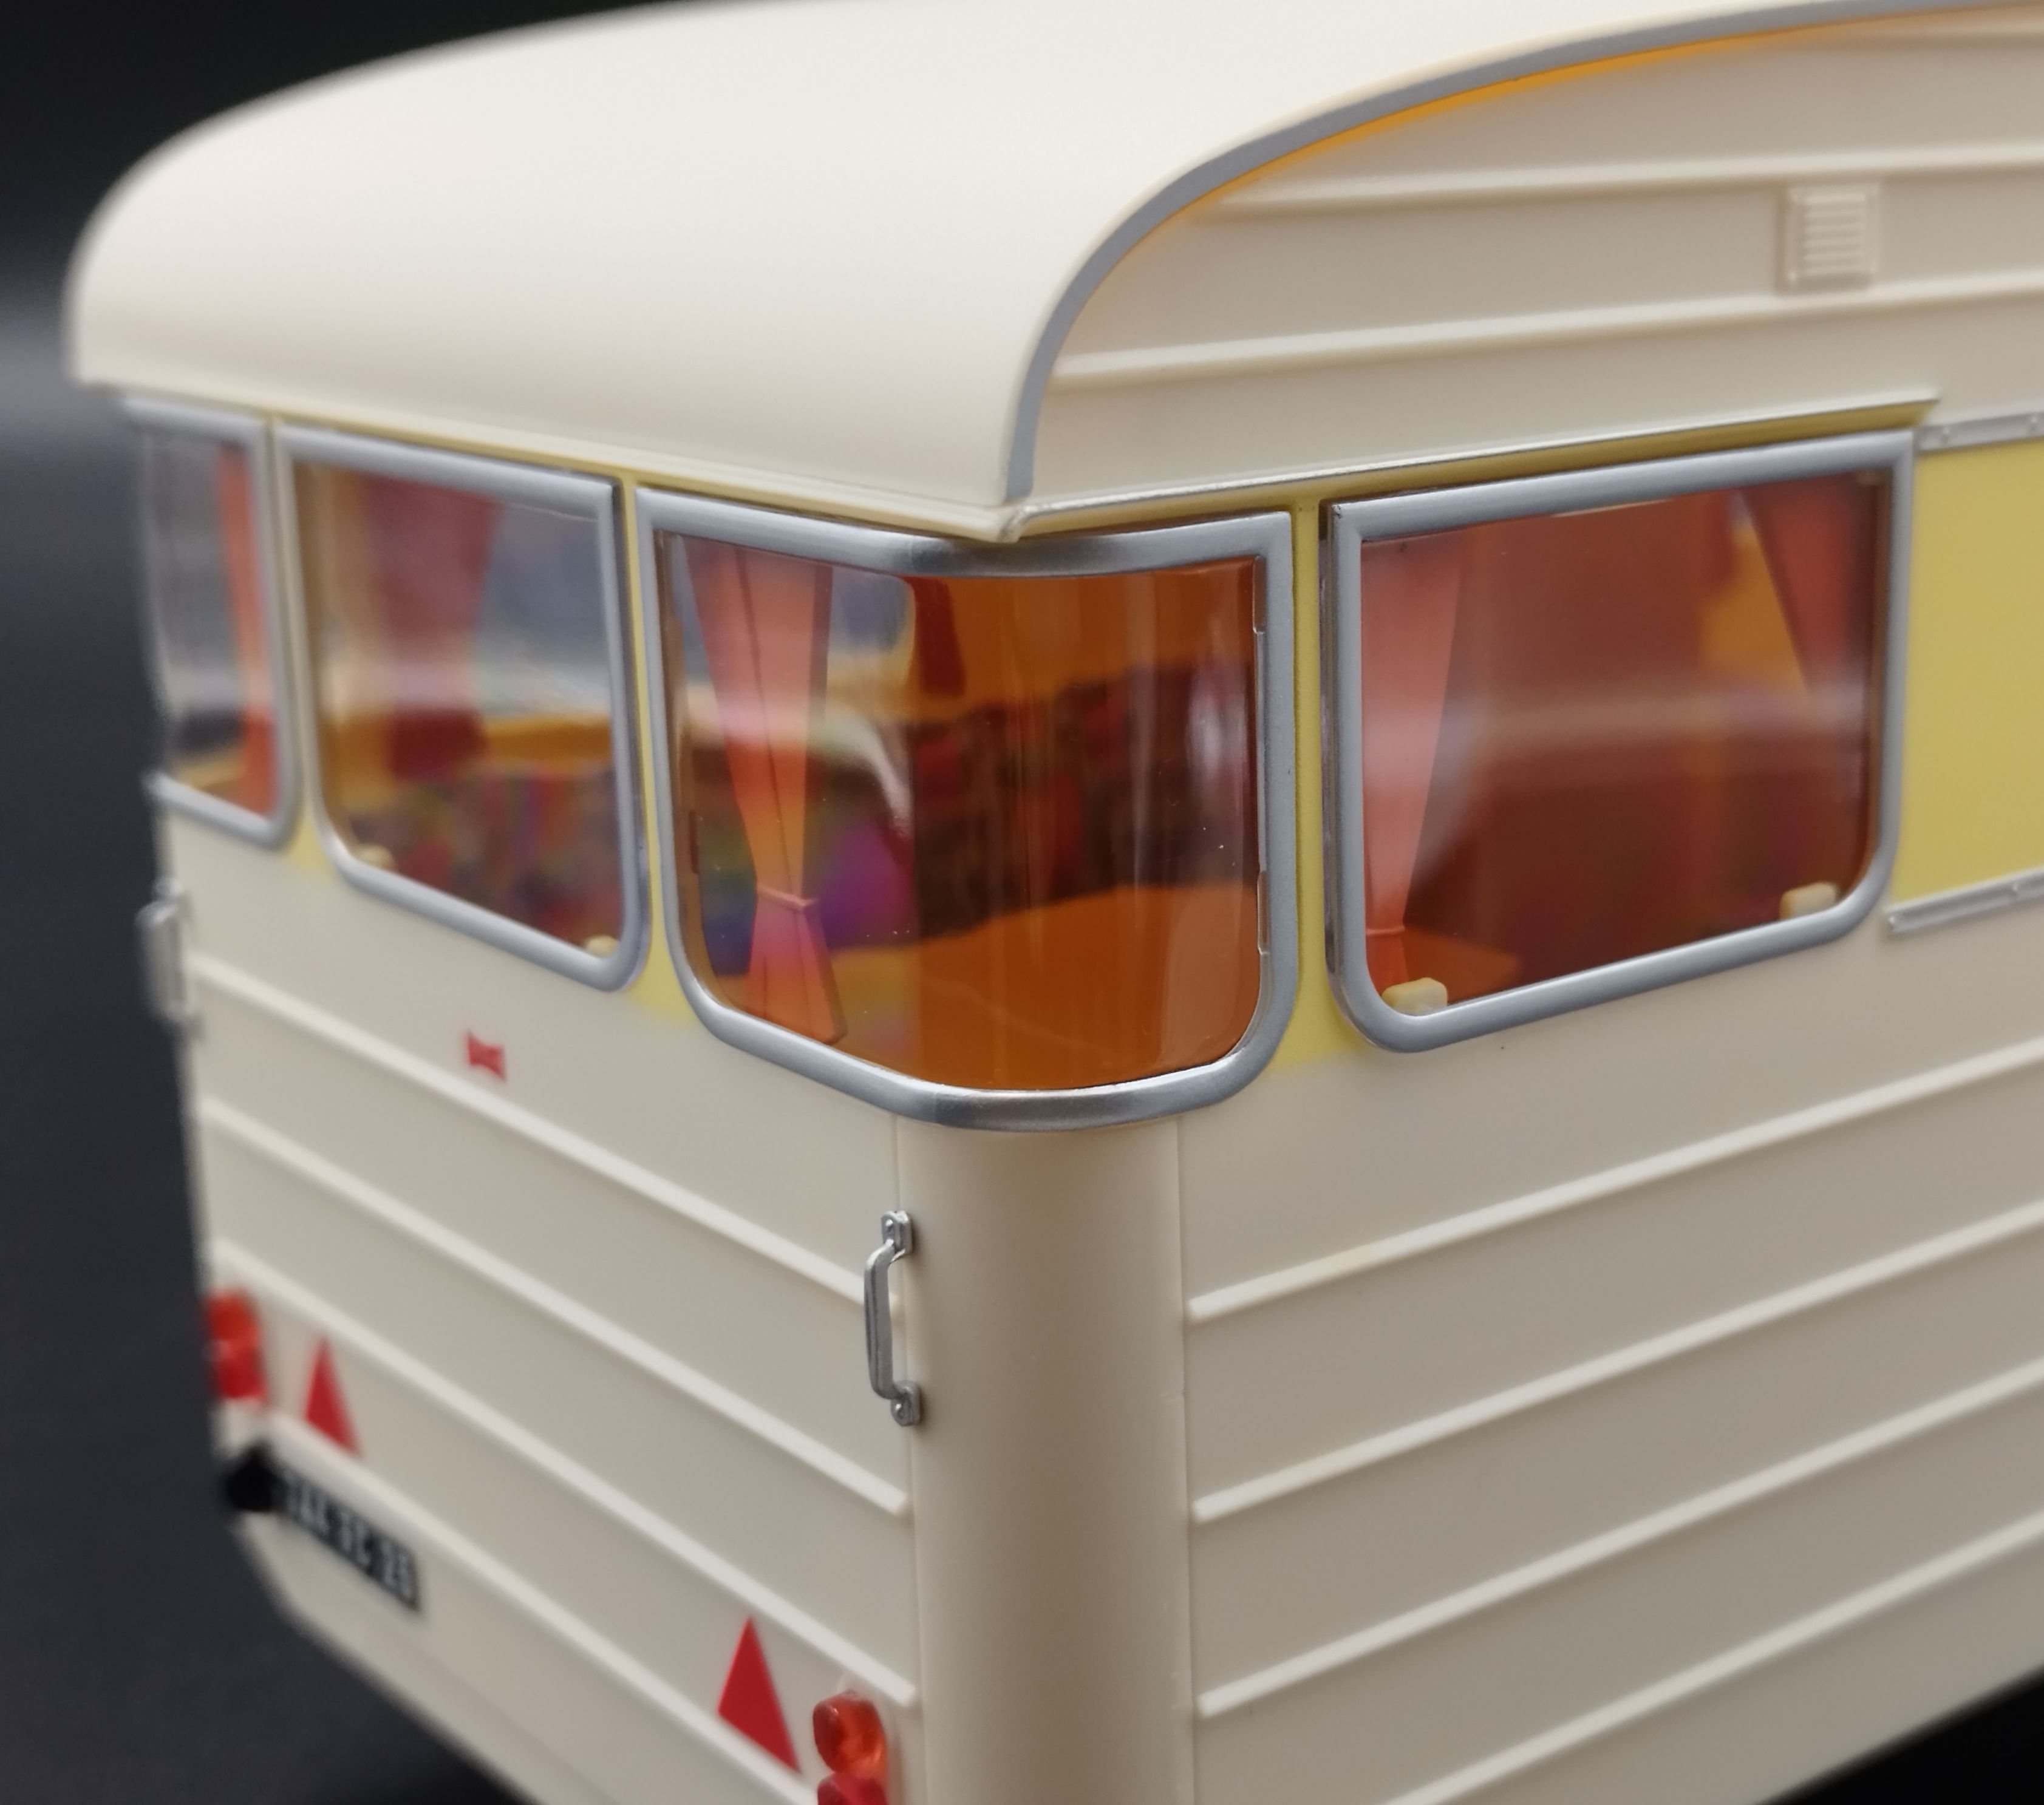 1:18 Norev 1960 Caravan Digue Panoramic 14 przyczepa kamping model